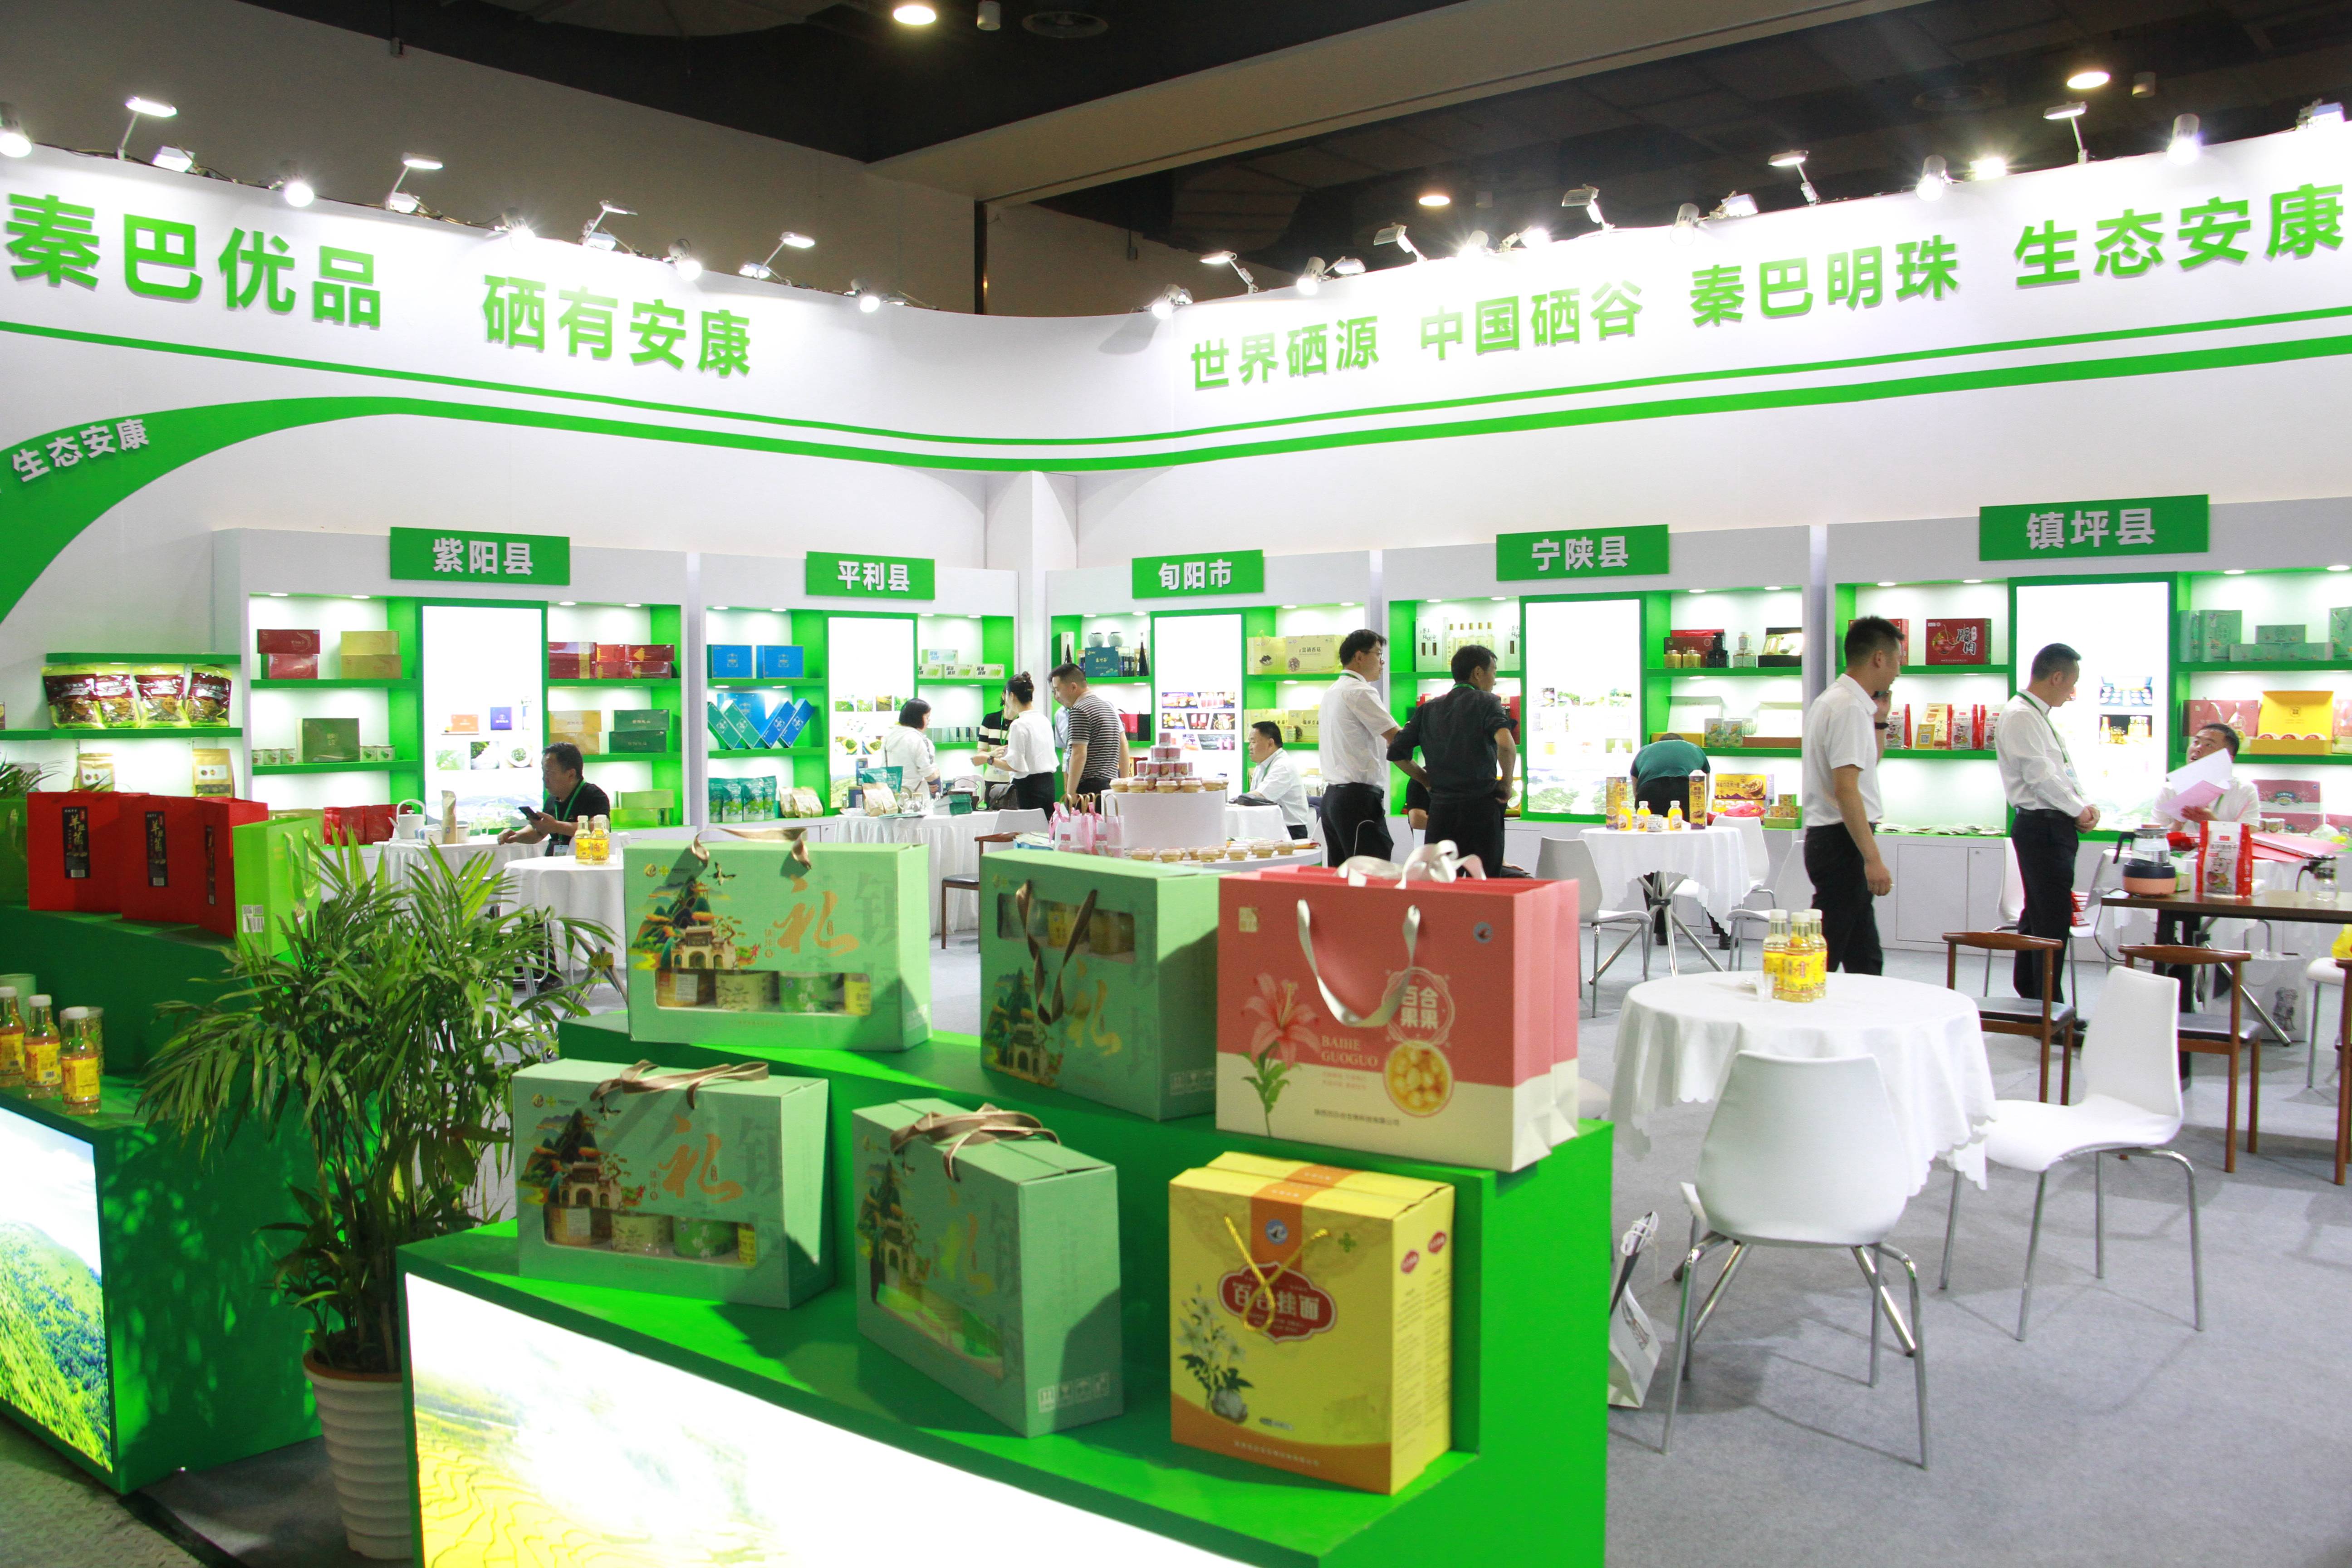 上海跨国采购会展中心开幕,陕西省安康市组织20余家农业企业参加展览